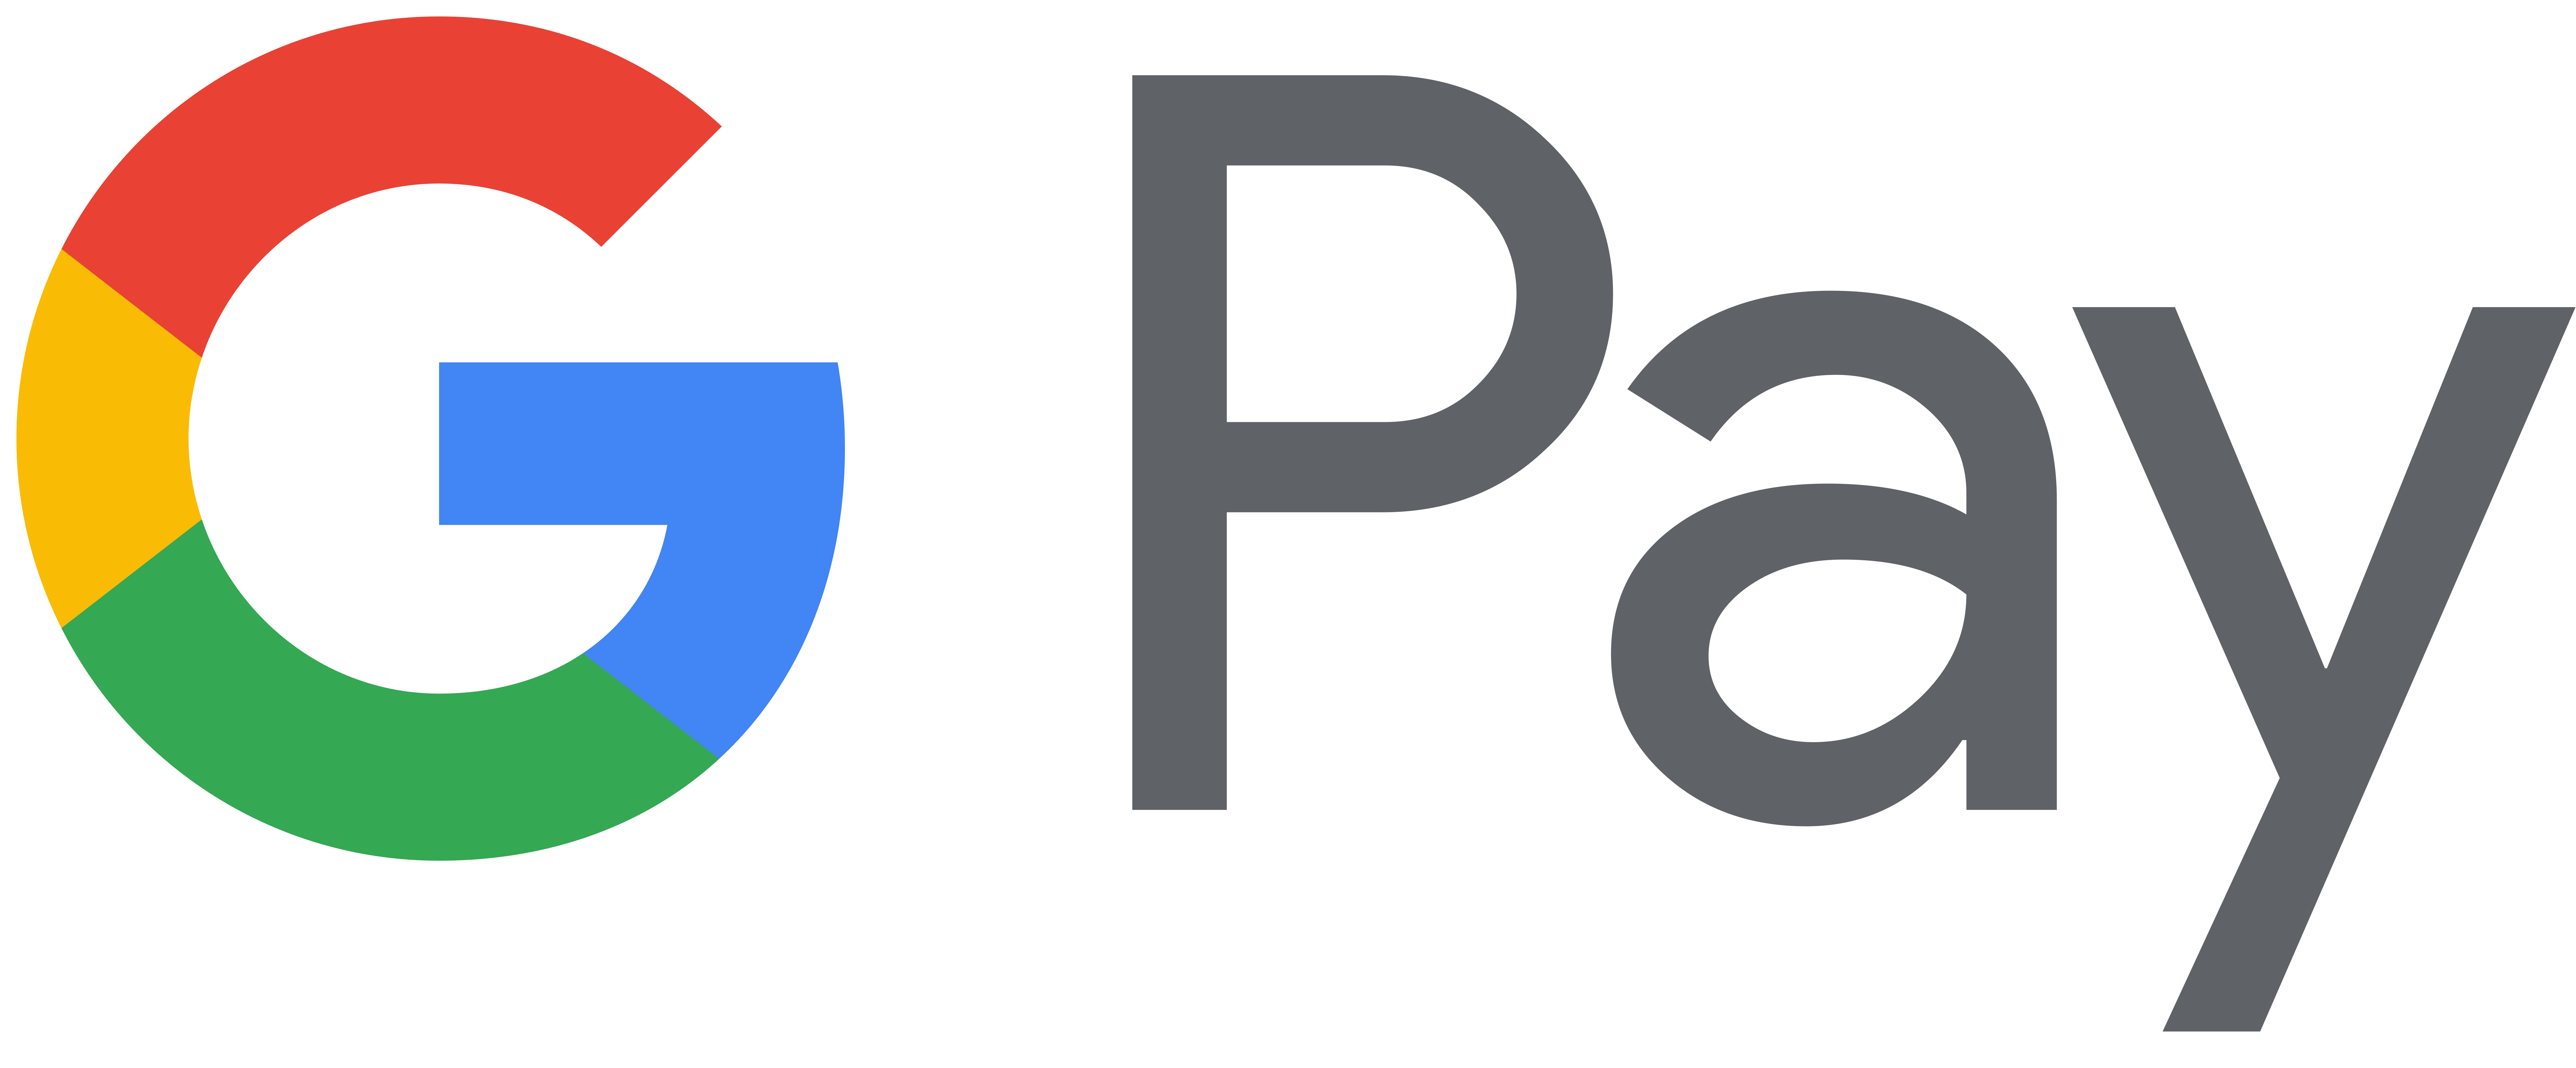 Gambar Google logo PNG Gambar